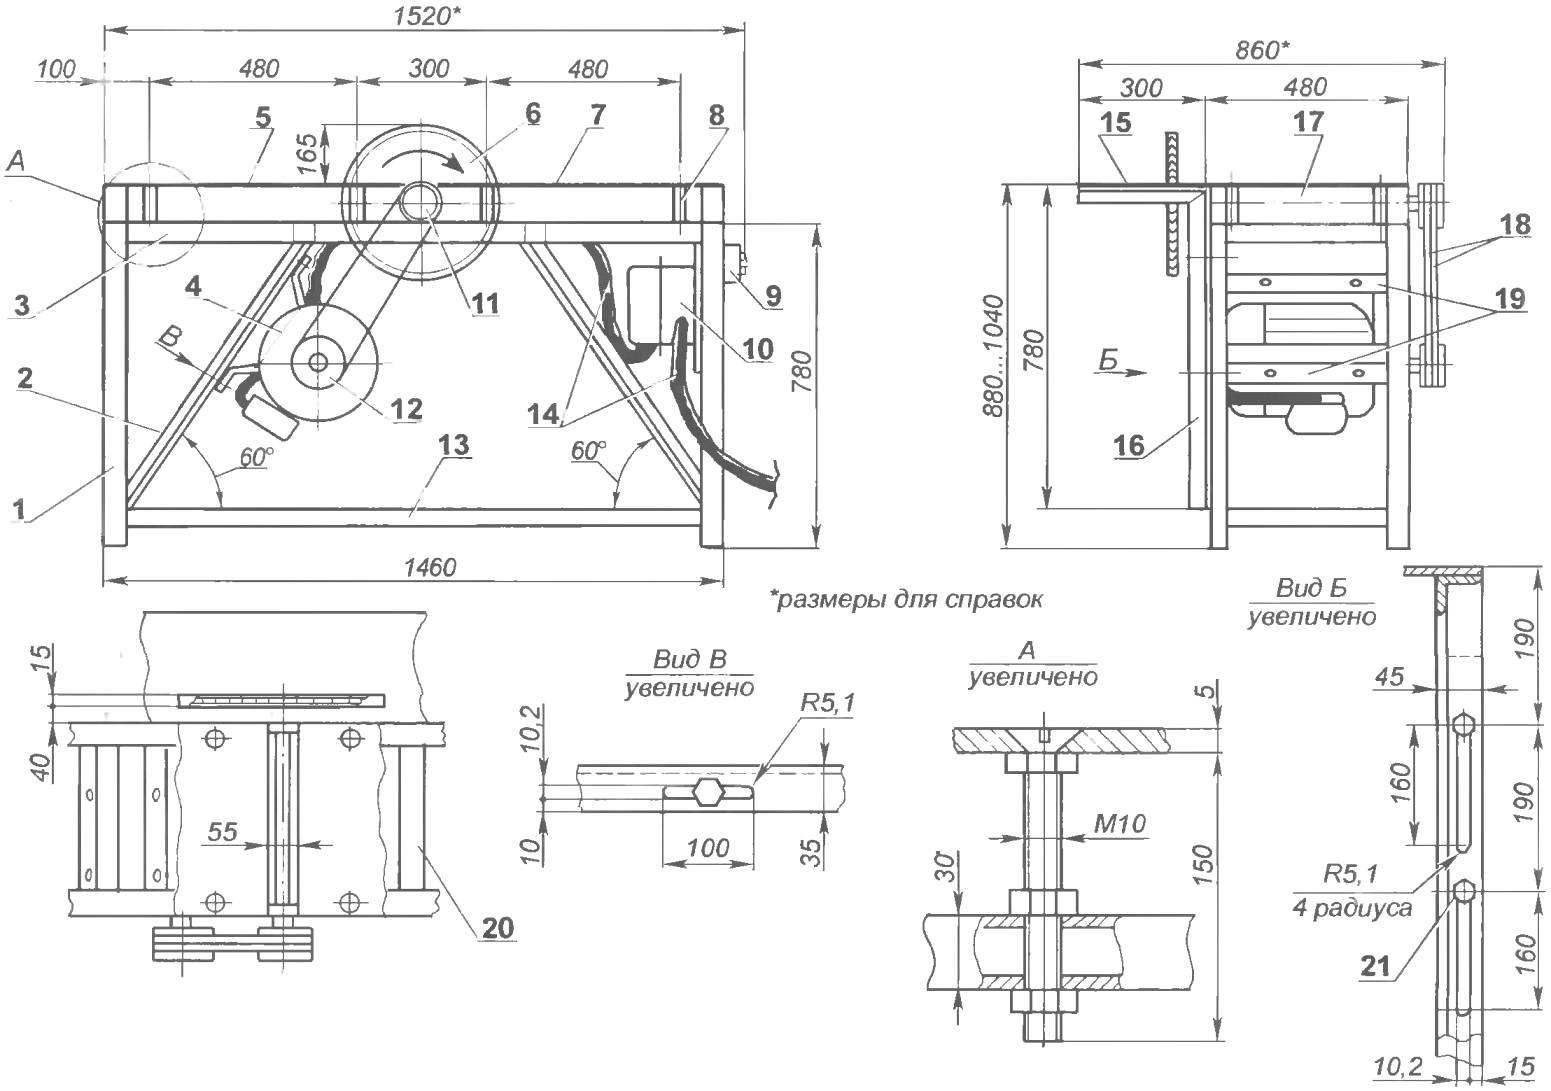 Геометрическая схема и компоновка деревообрабатывающего станка